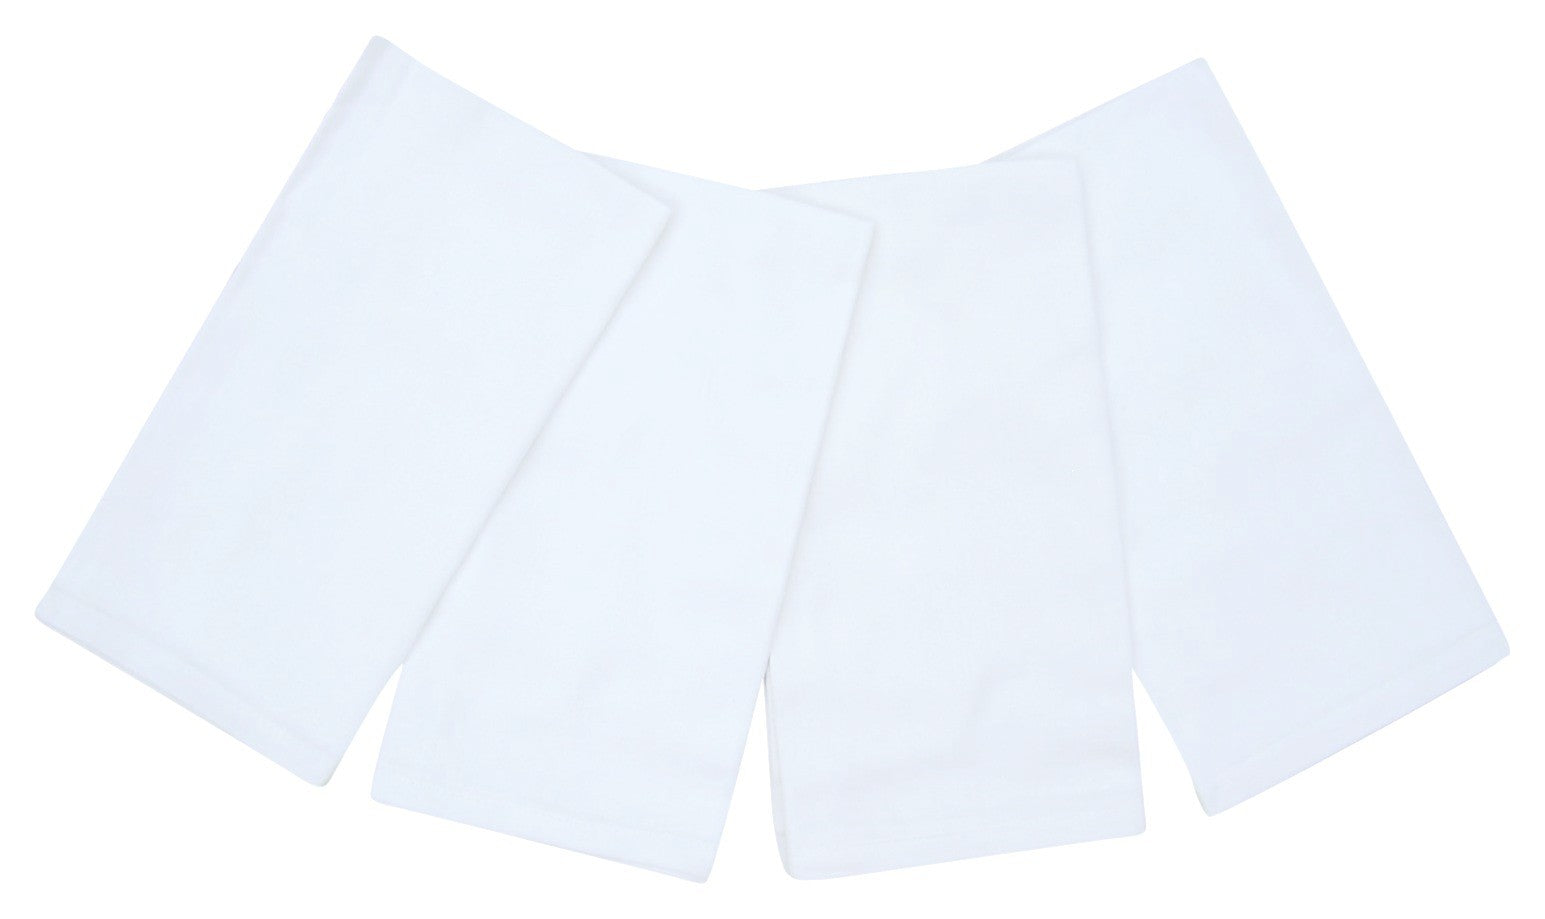 servilletas 100% algodón, 20.0 x 20.0 in, juego de 4, color blanco brillante 